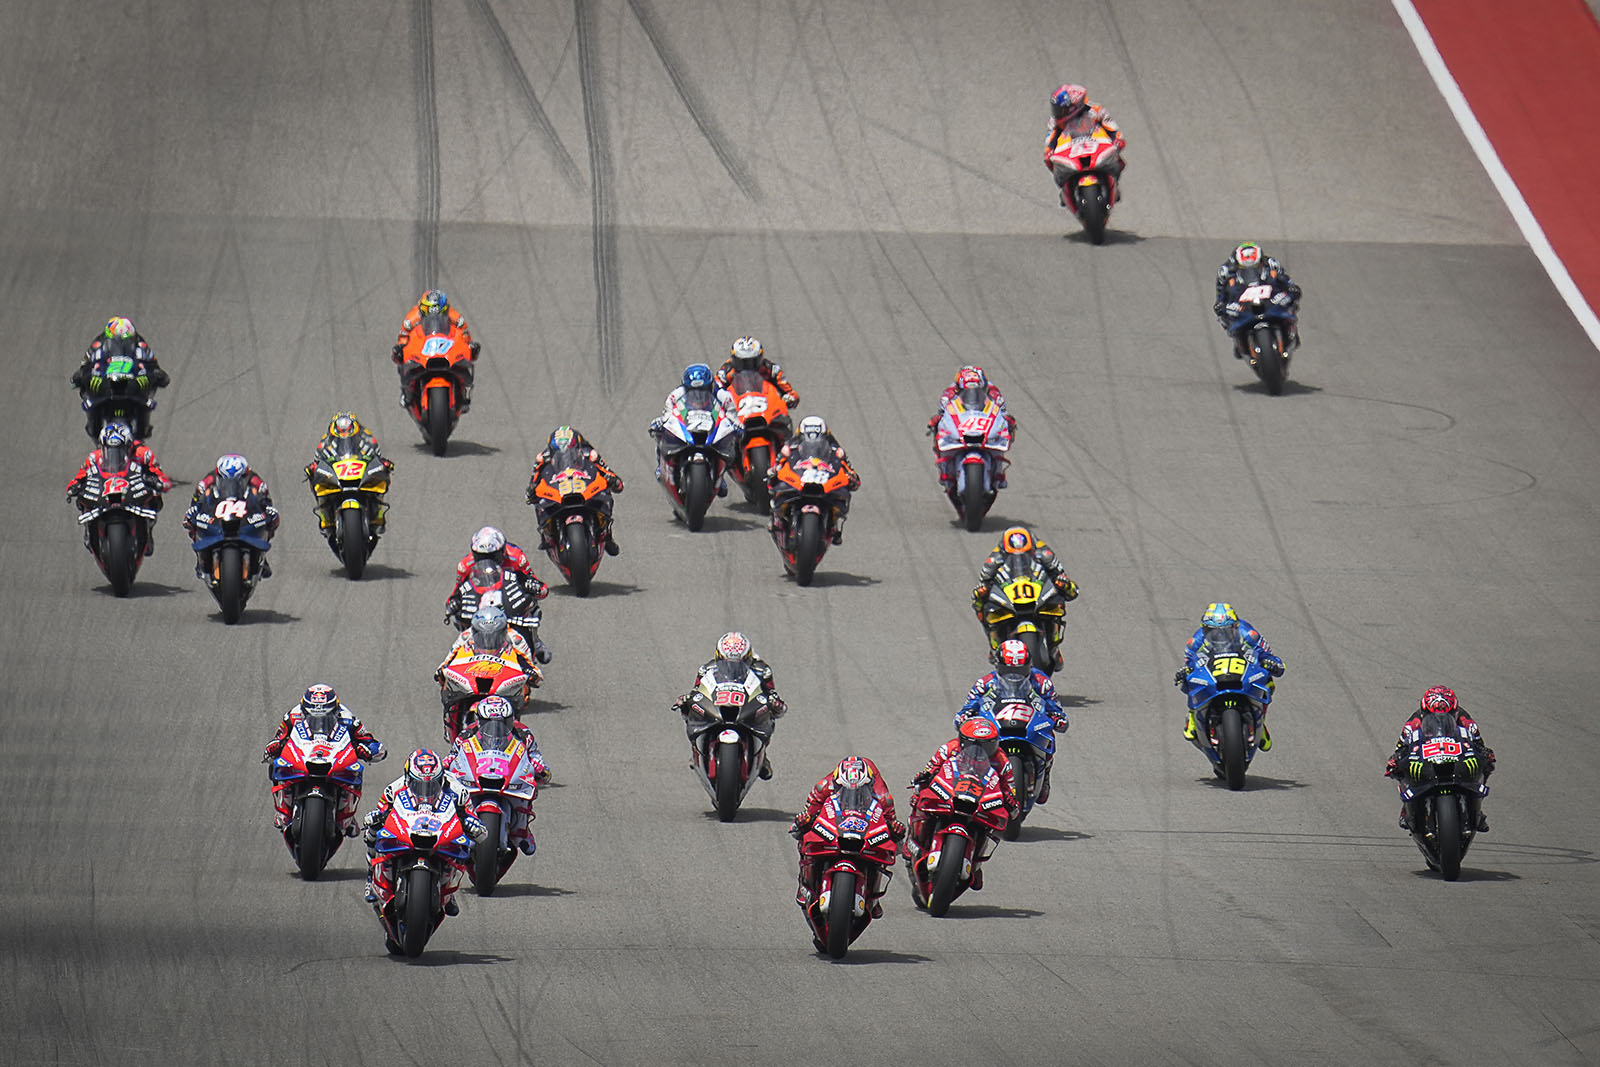 MotoGP divulga calendário de 2023 com 21 etapas - Notícia de MotoGP -  Grande Prêmio